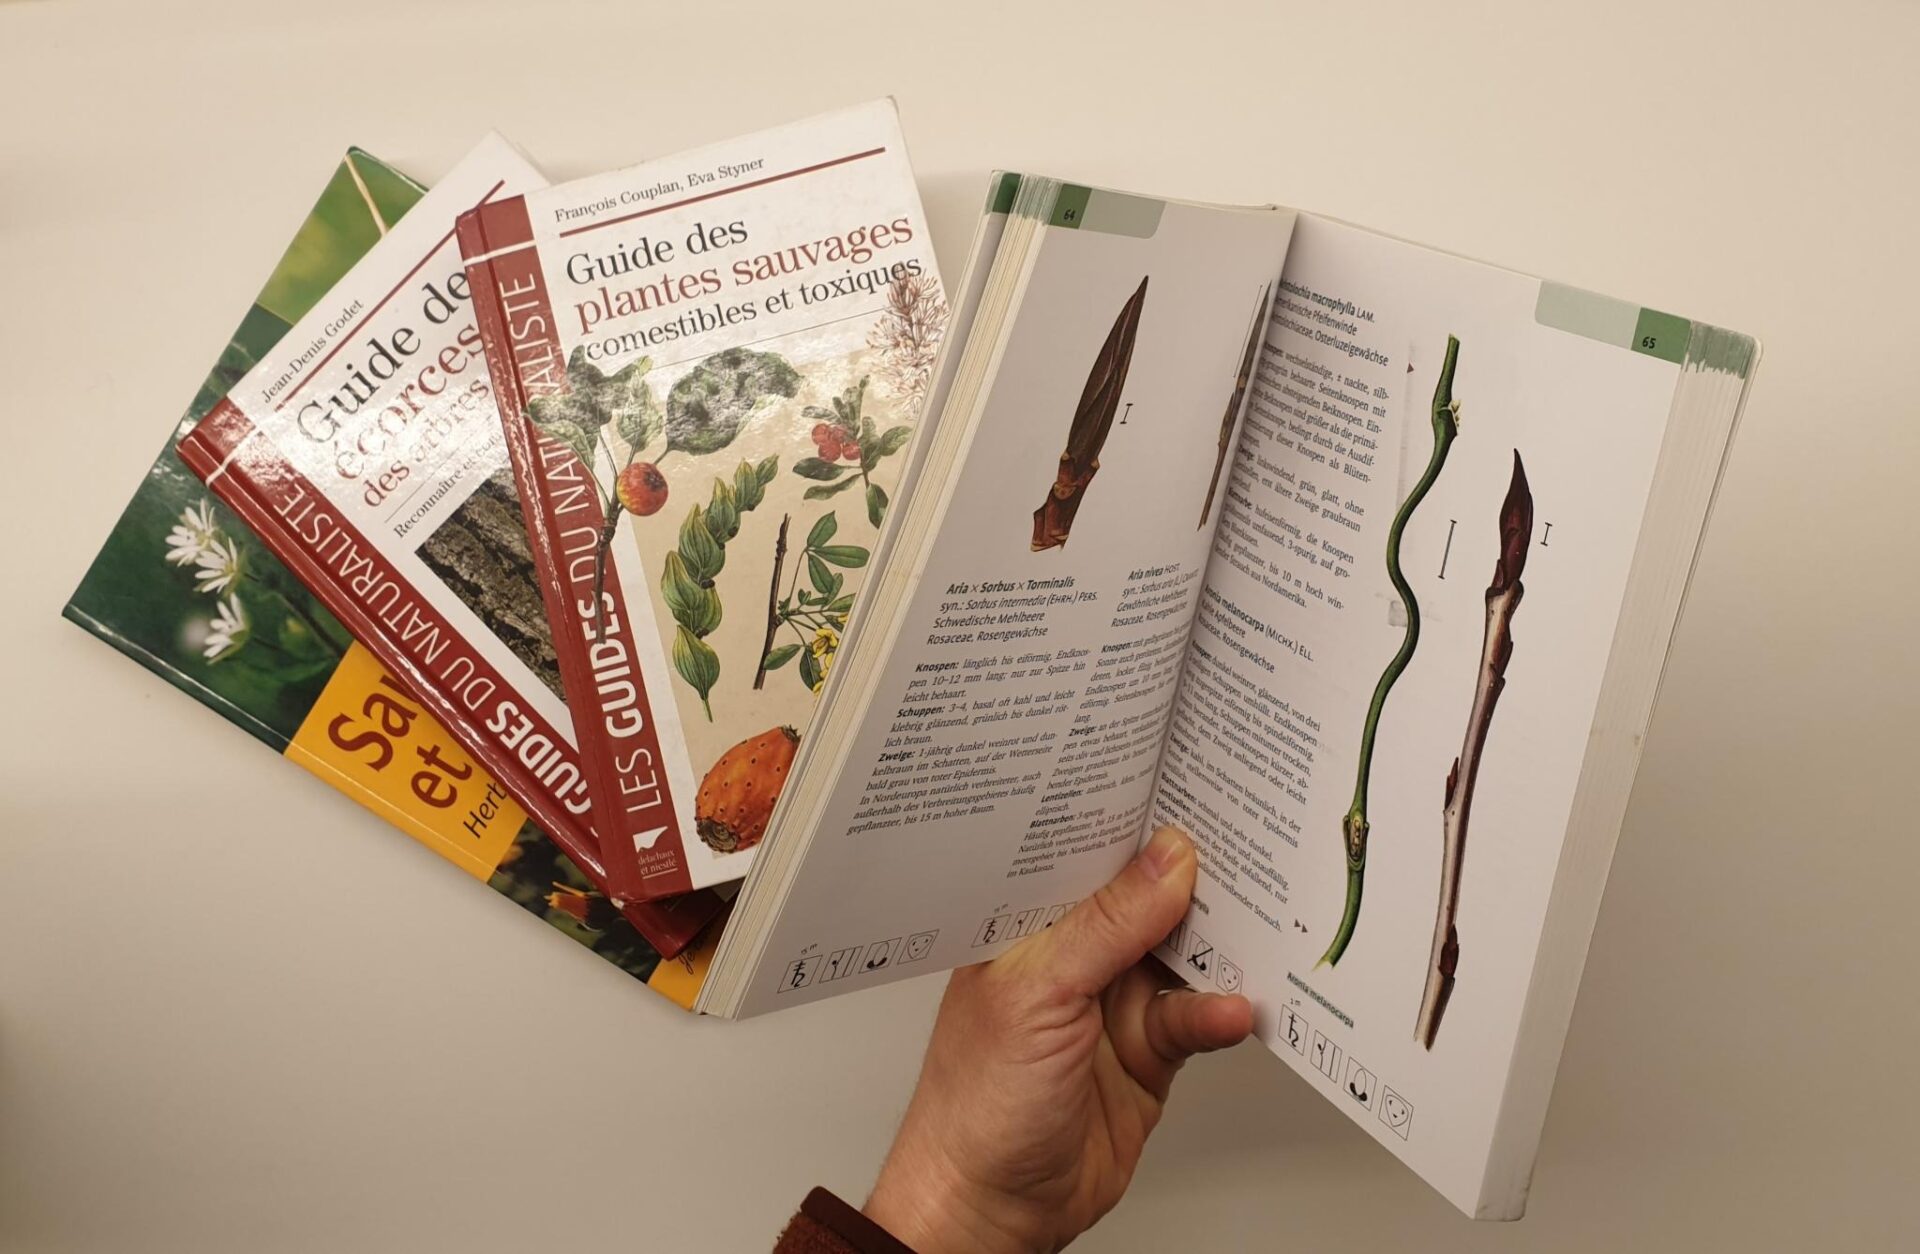 Bücher über wilde Pflanzen. Eine Hnad hält eines der Bücher offen und der Inhalt ist sichtbar.